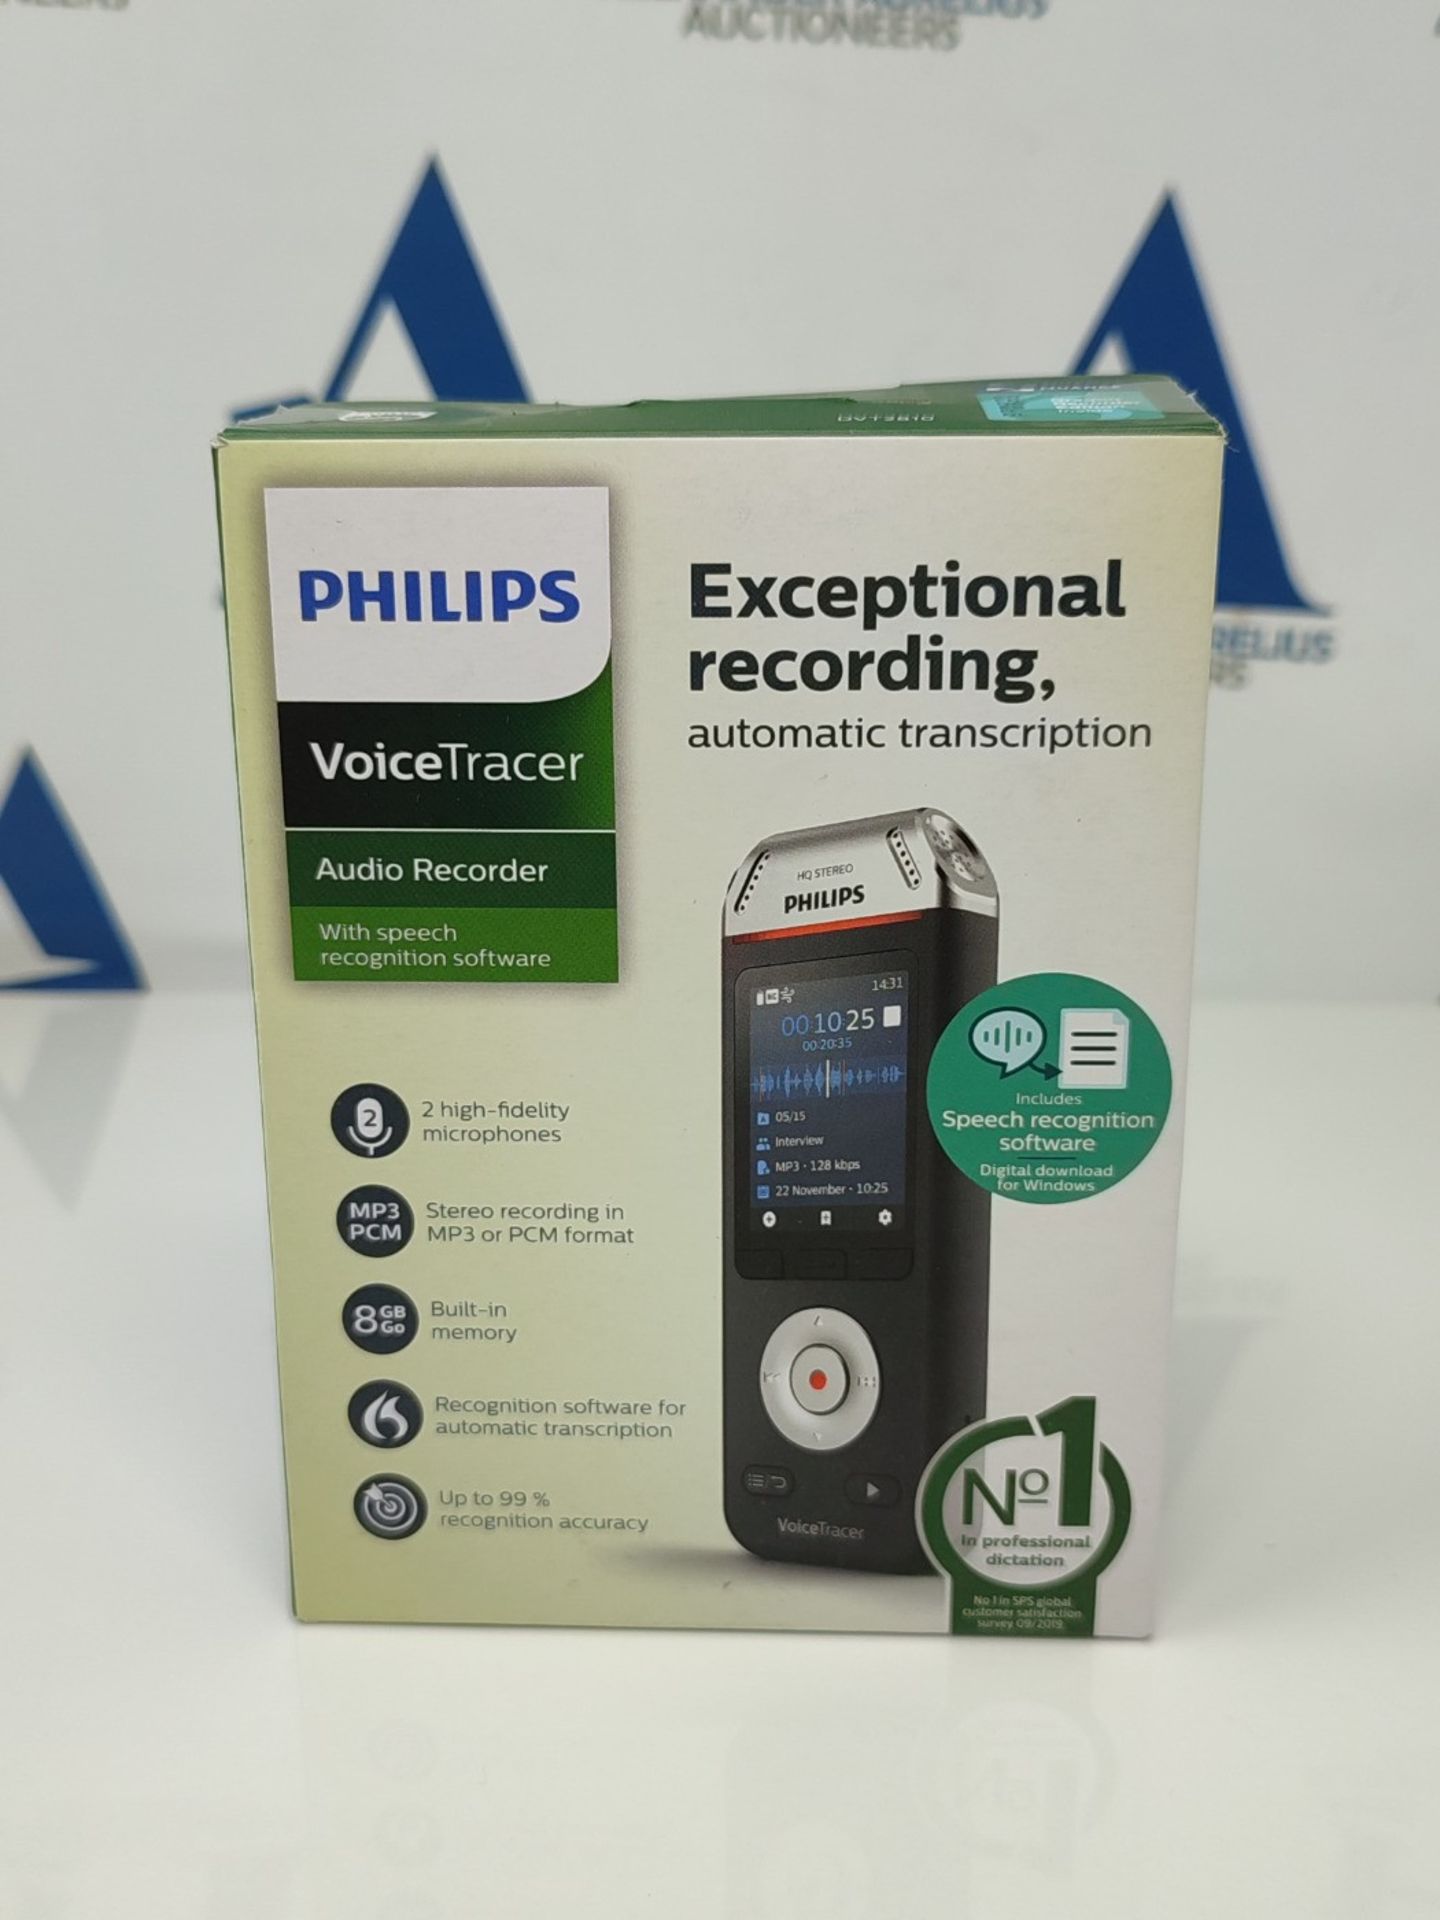 RRP £111.00 Philips Grabadora de Audio VoiceTracer con Software de reconocimiento de Voz Dragon Sp - Image 2 of 3